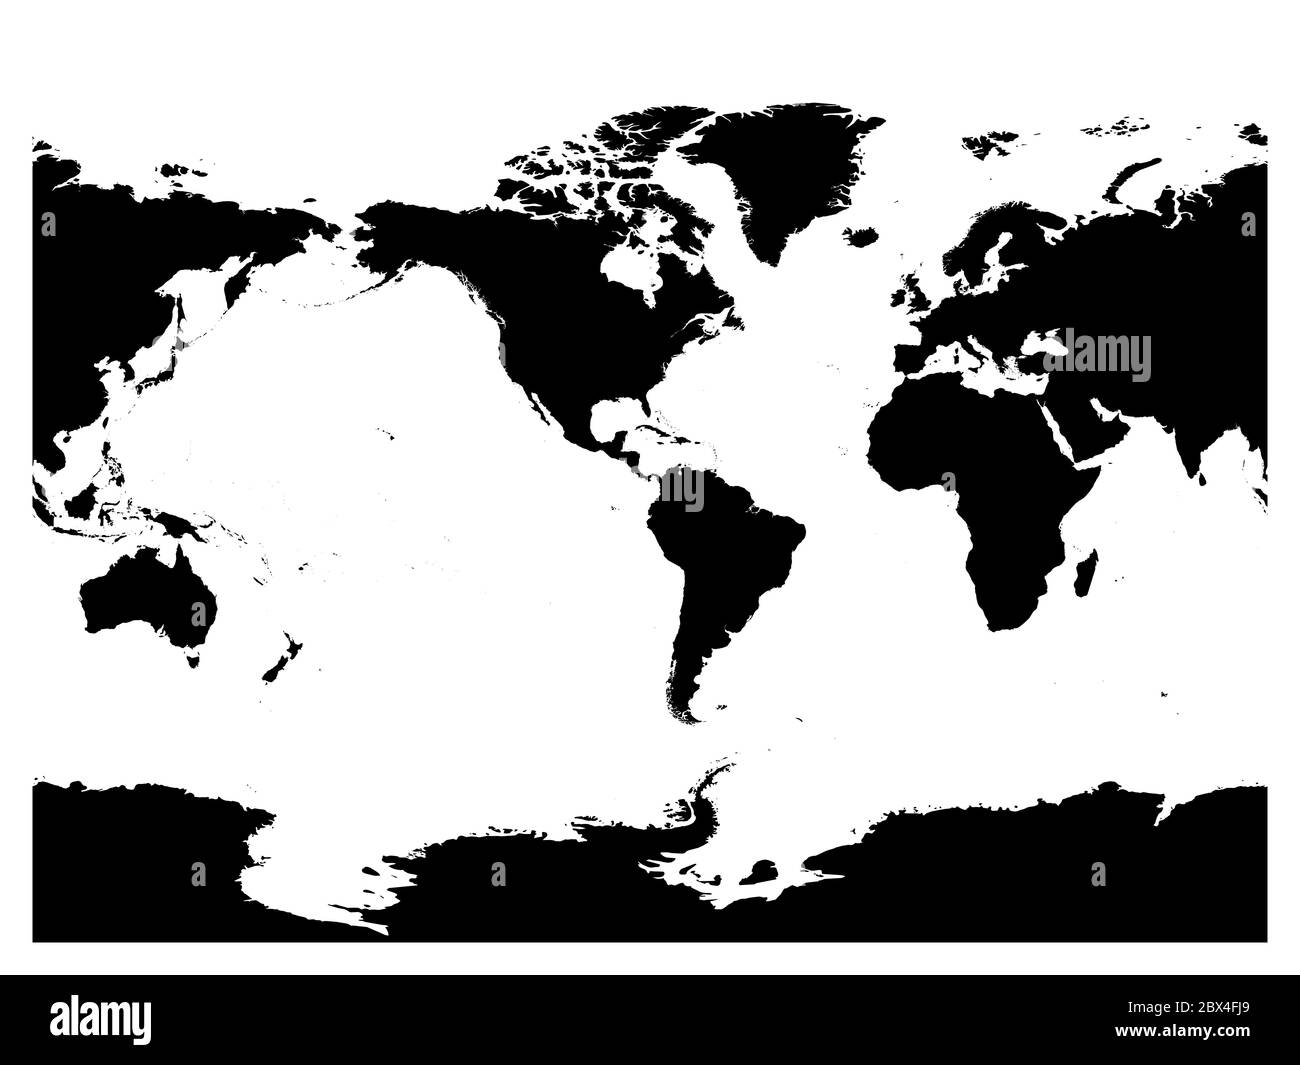 Carte du monde centrée sur l'Amérique. Silhouette noire haute précision sur fond blanc. Illustration vectorielle. Illustration de Vecteur